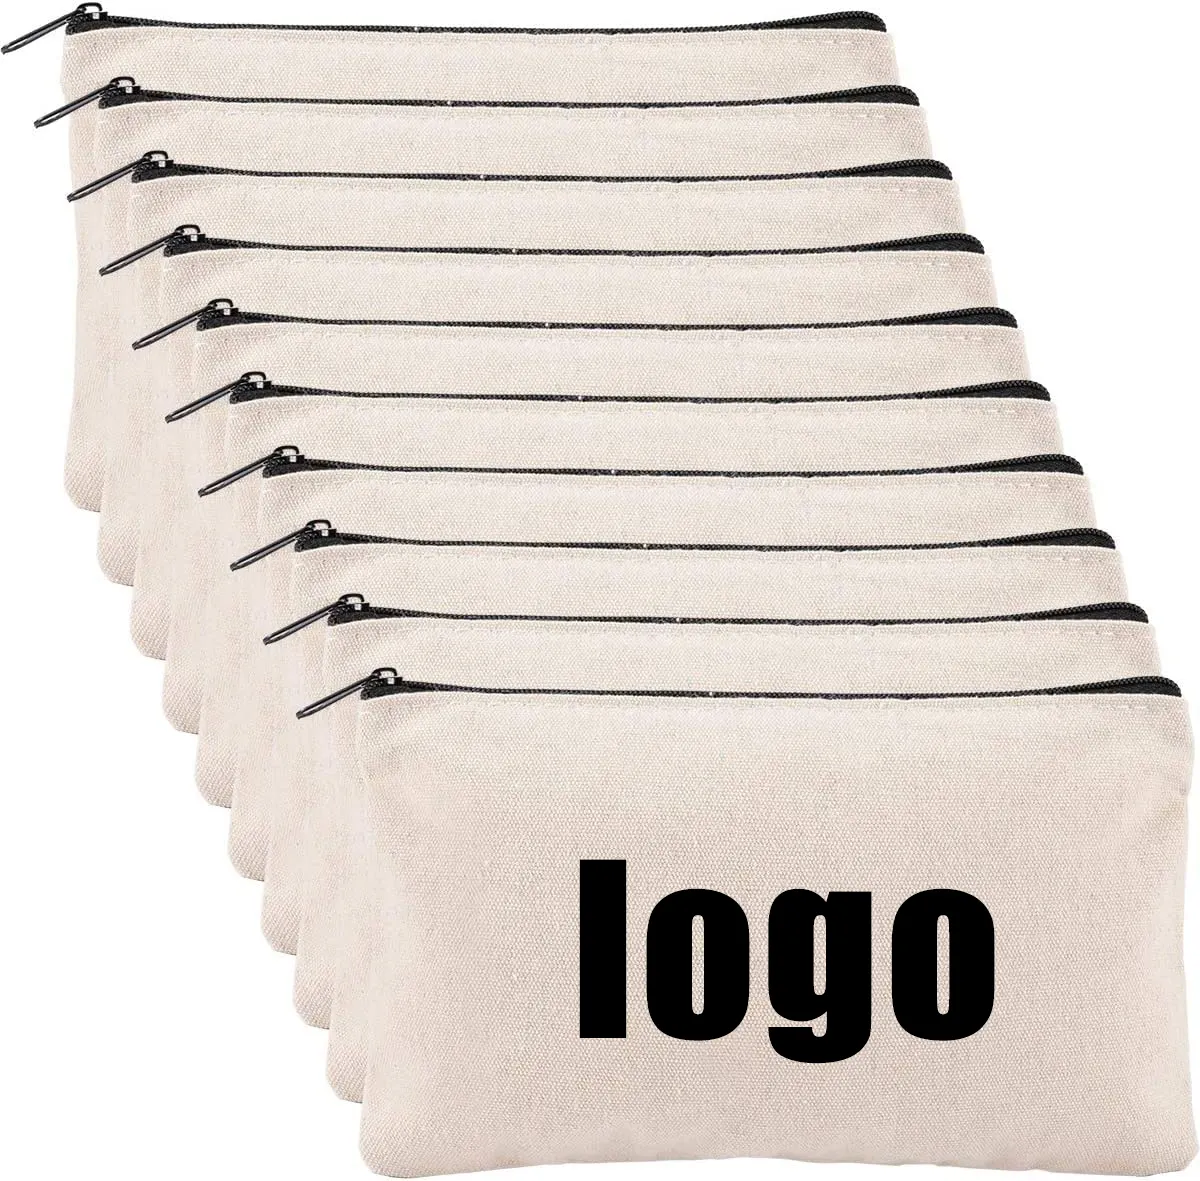 Personalizado Em Branco DIY Handmade Canvas Lápis Bag-Algodão Canvas Cosmetic Bag Multi-Purpose Travel Toiletry Bag